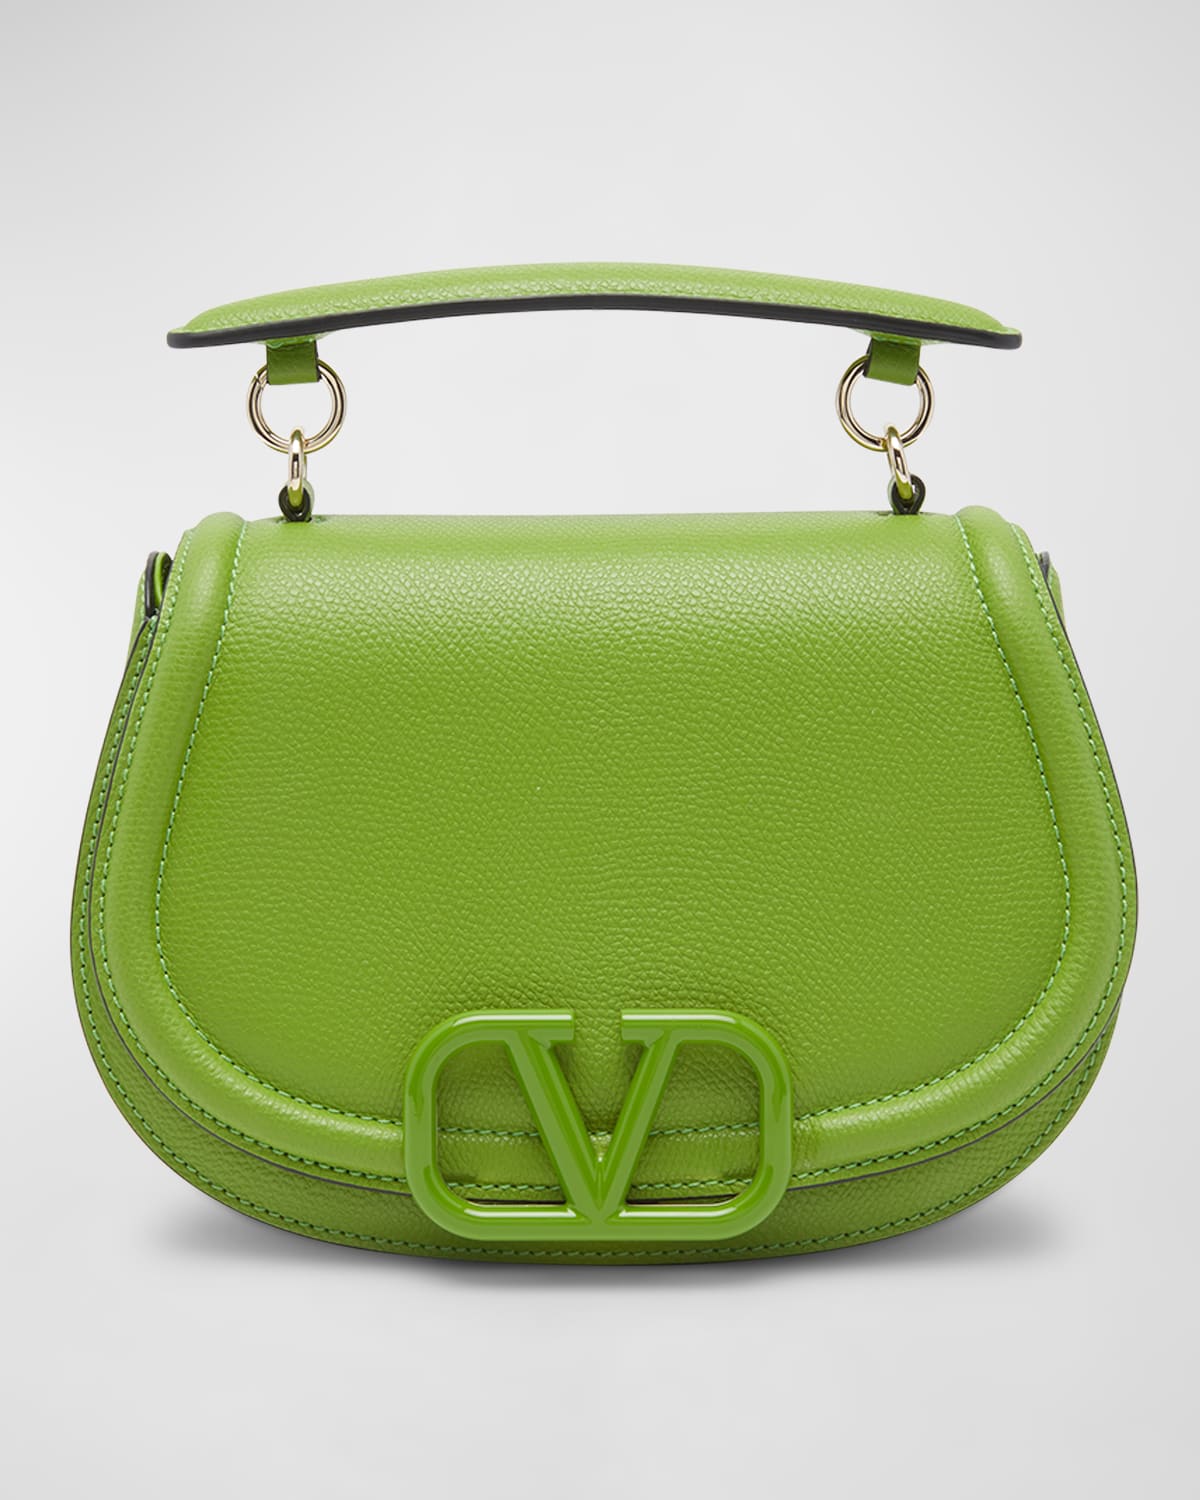 Valentino Garavani Vsling Saddle Leather Shoulder Bag In Chartreuse